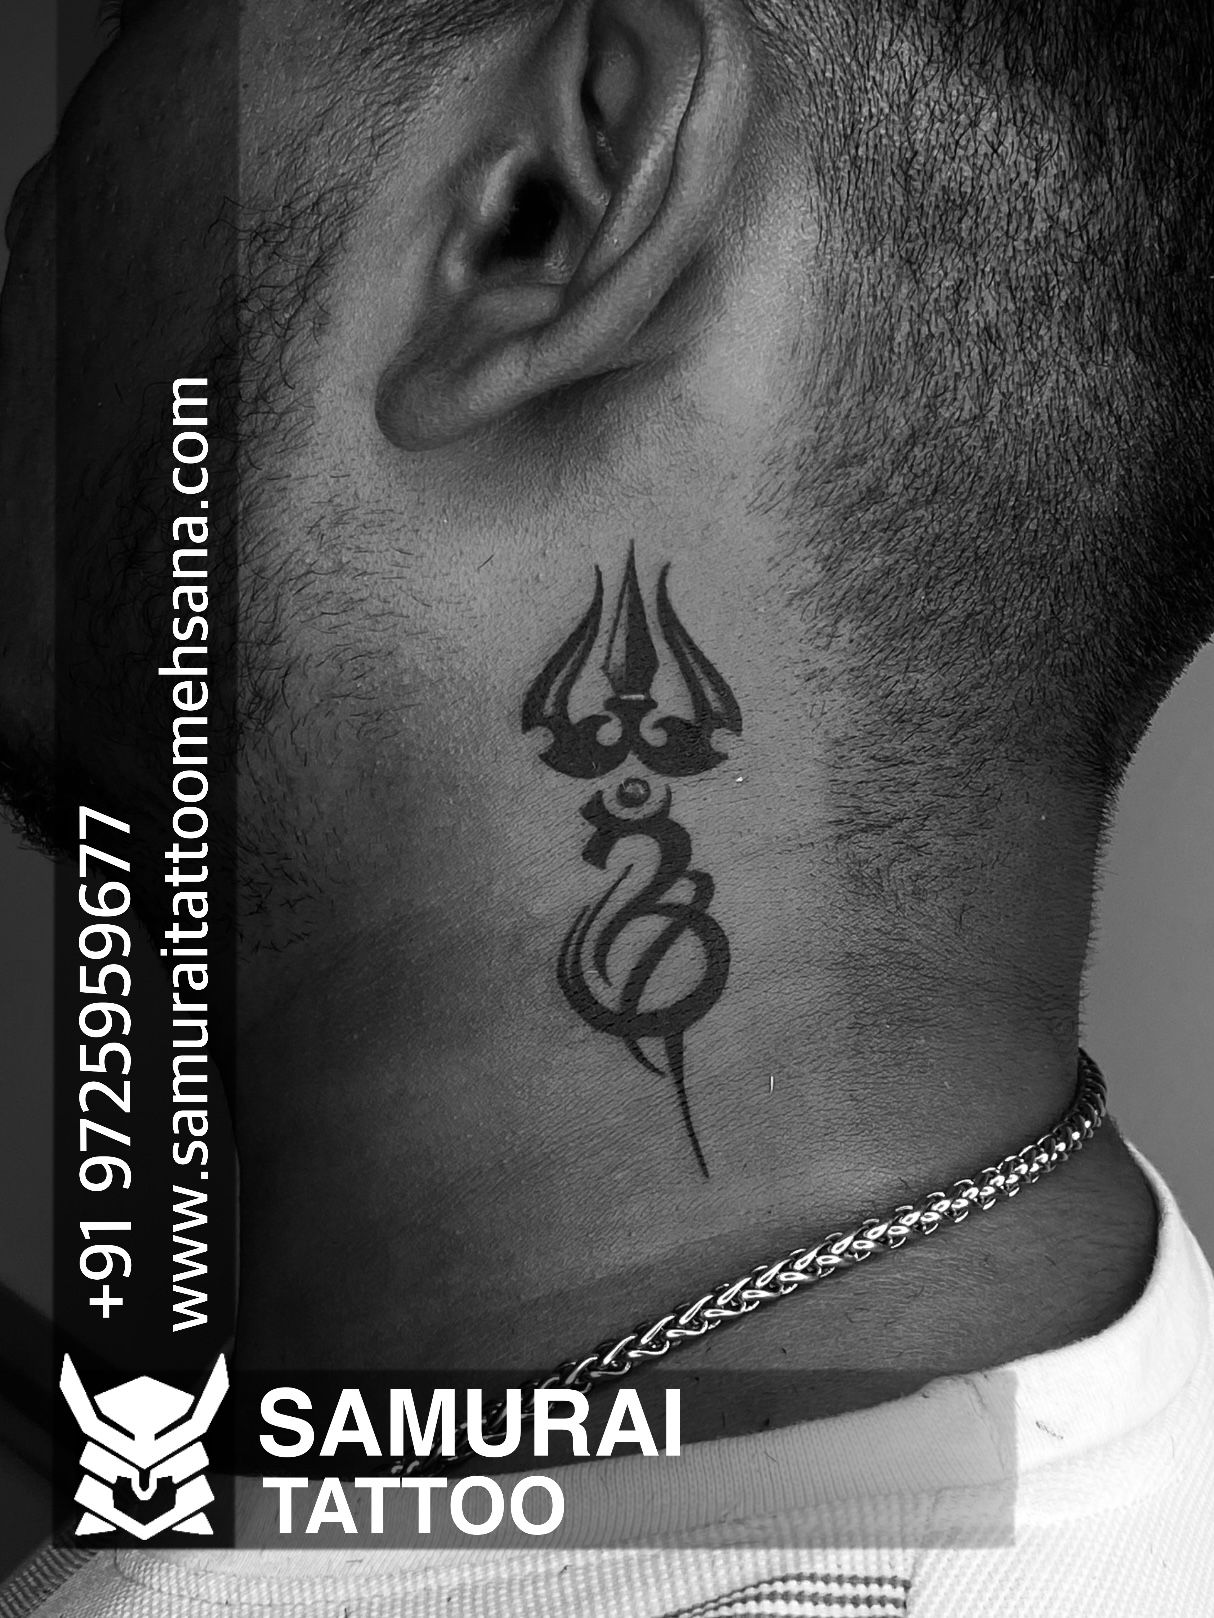 Trishul tattoo on neck | Tattoos, Neck tattoo, Behind ear tattoo